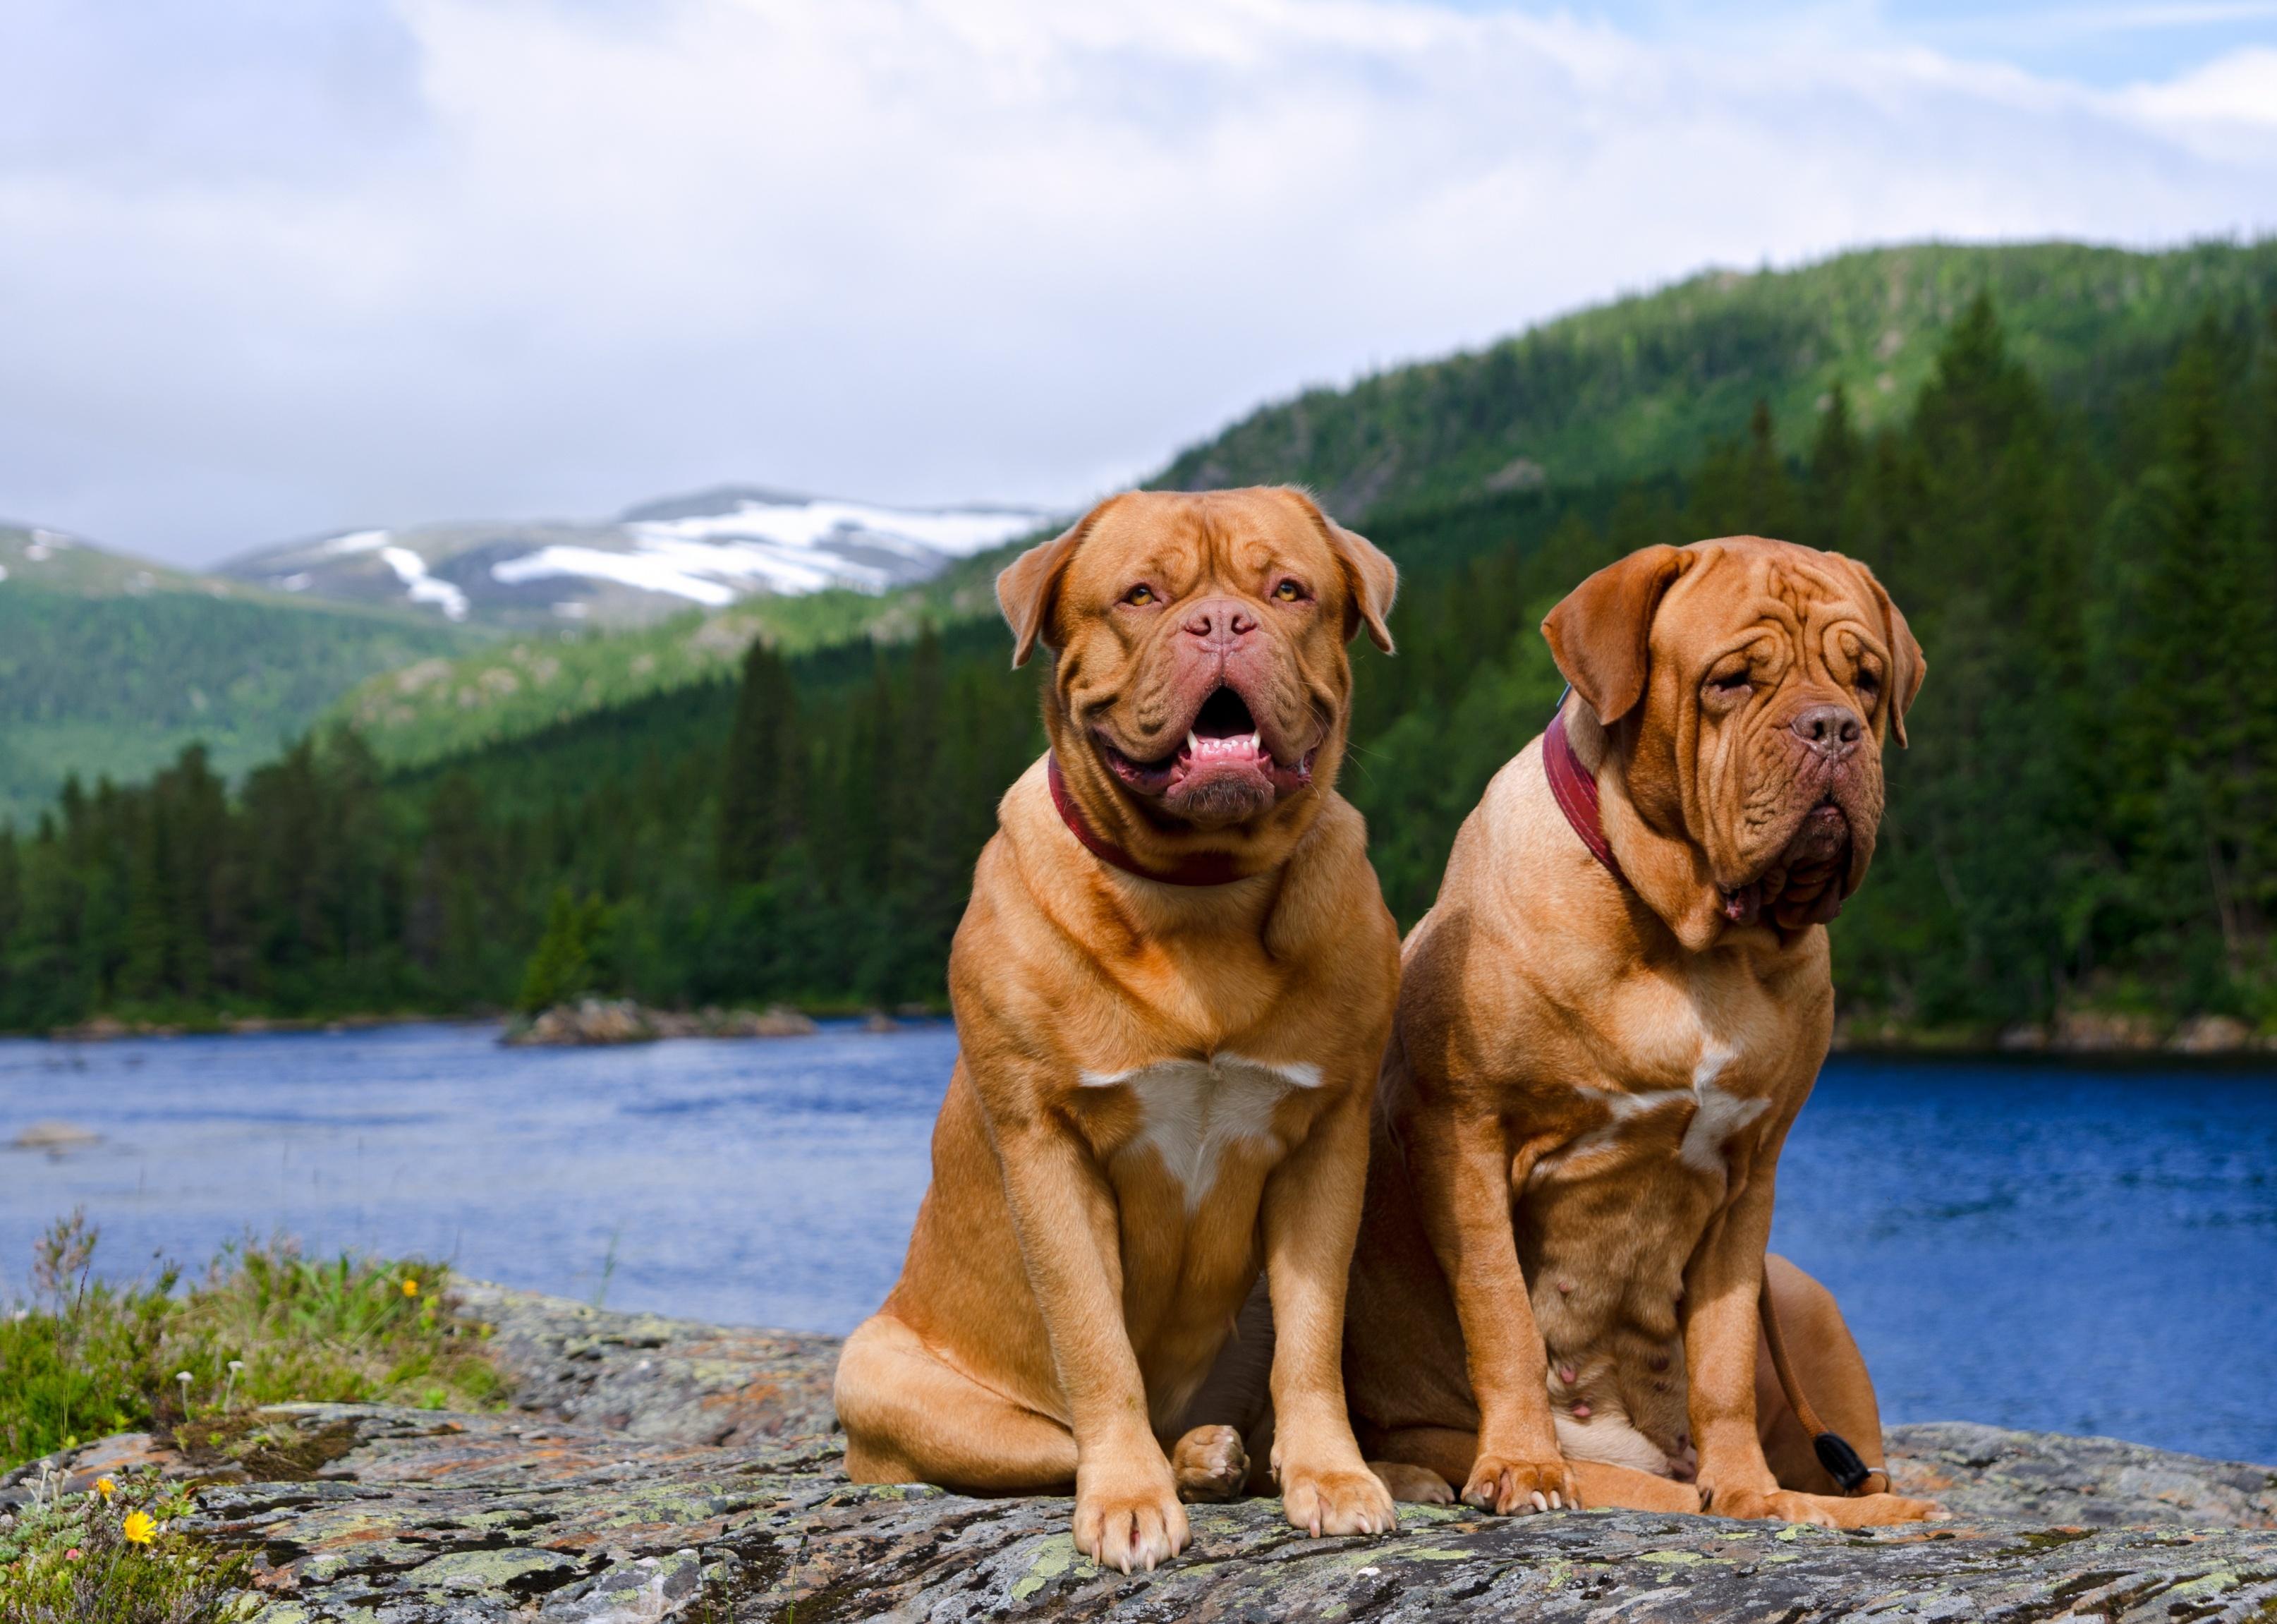 Twp Dogue De Bordeaux dogs sitting on a rock with a summer Norvegian landscape.